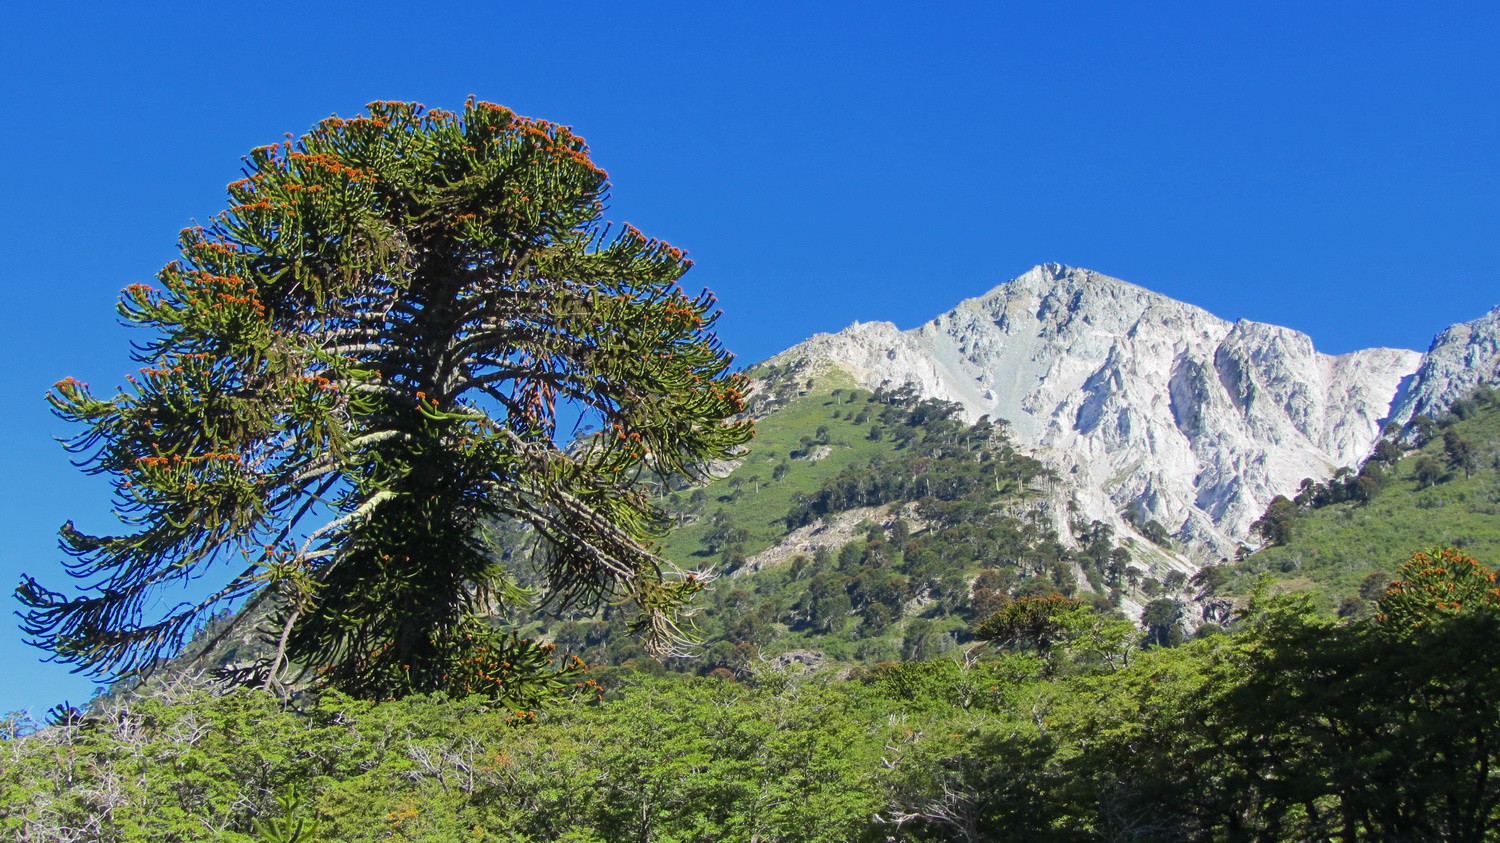 Araucaria tree with Cerro Impodi